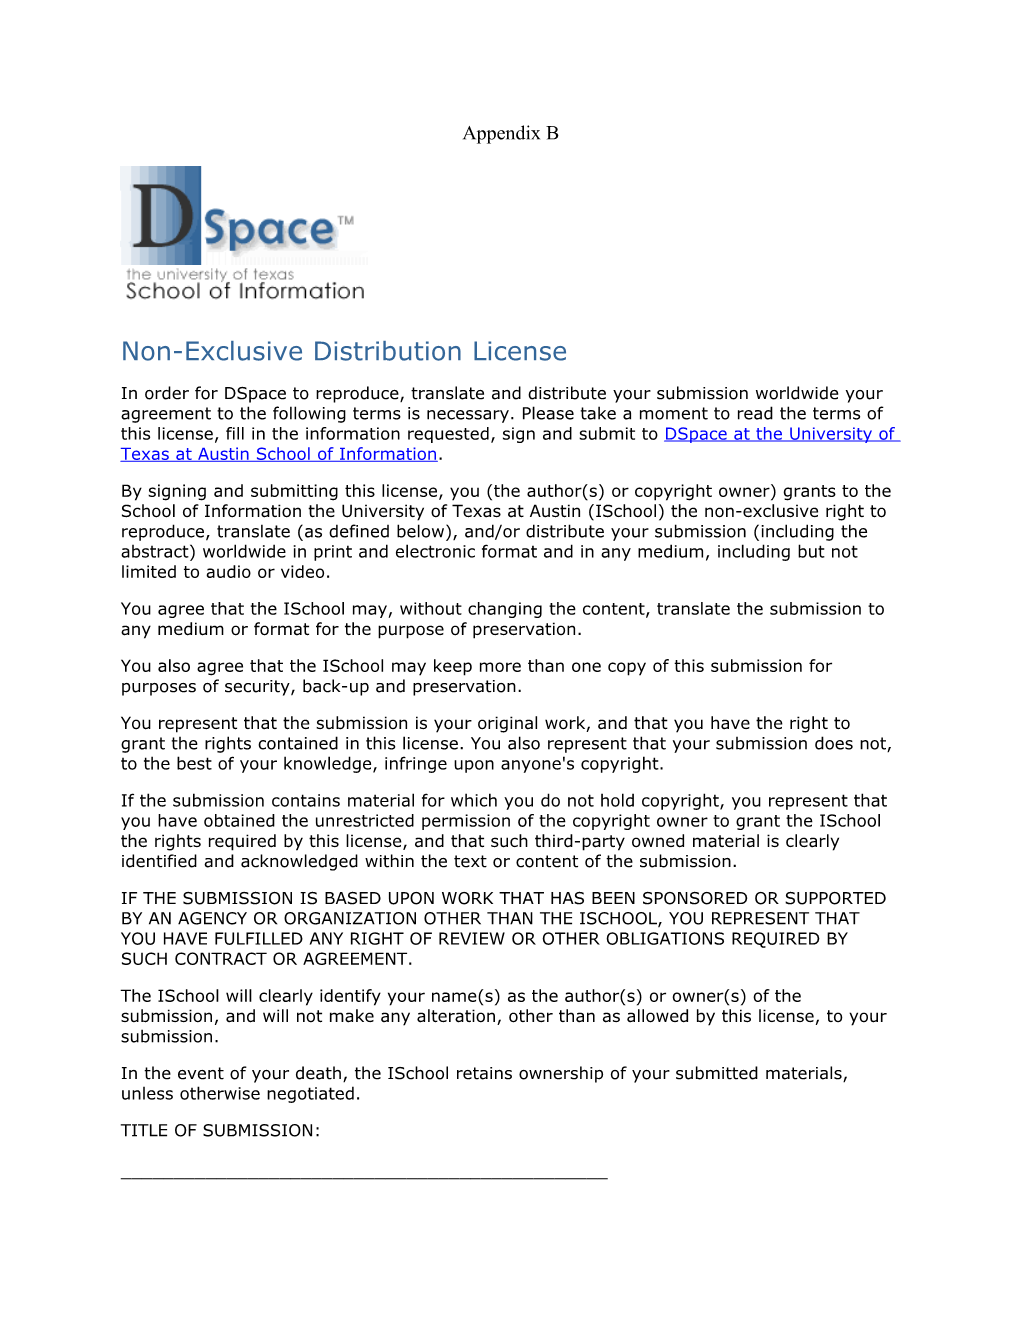 Non-Exclusive Distribution License